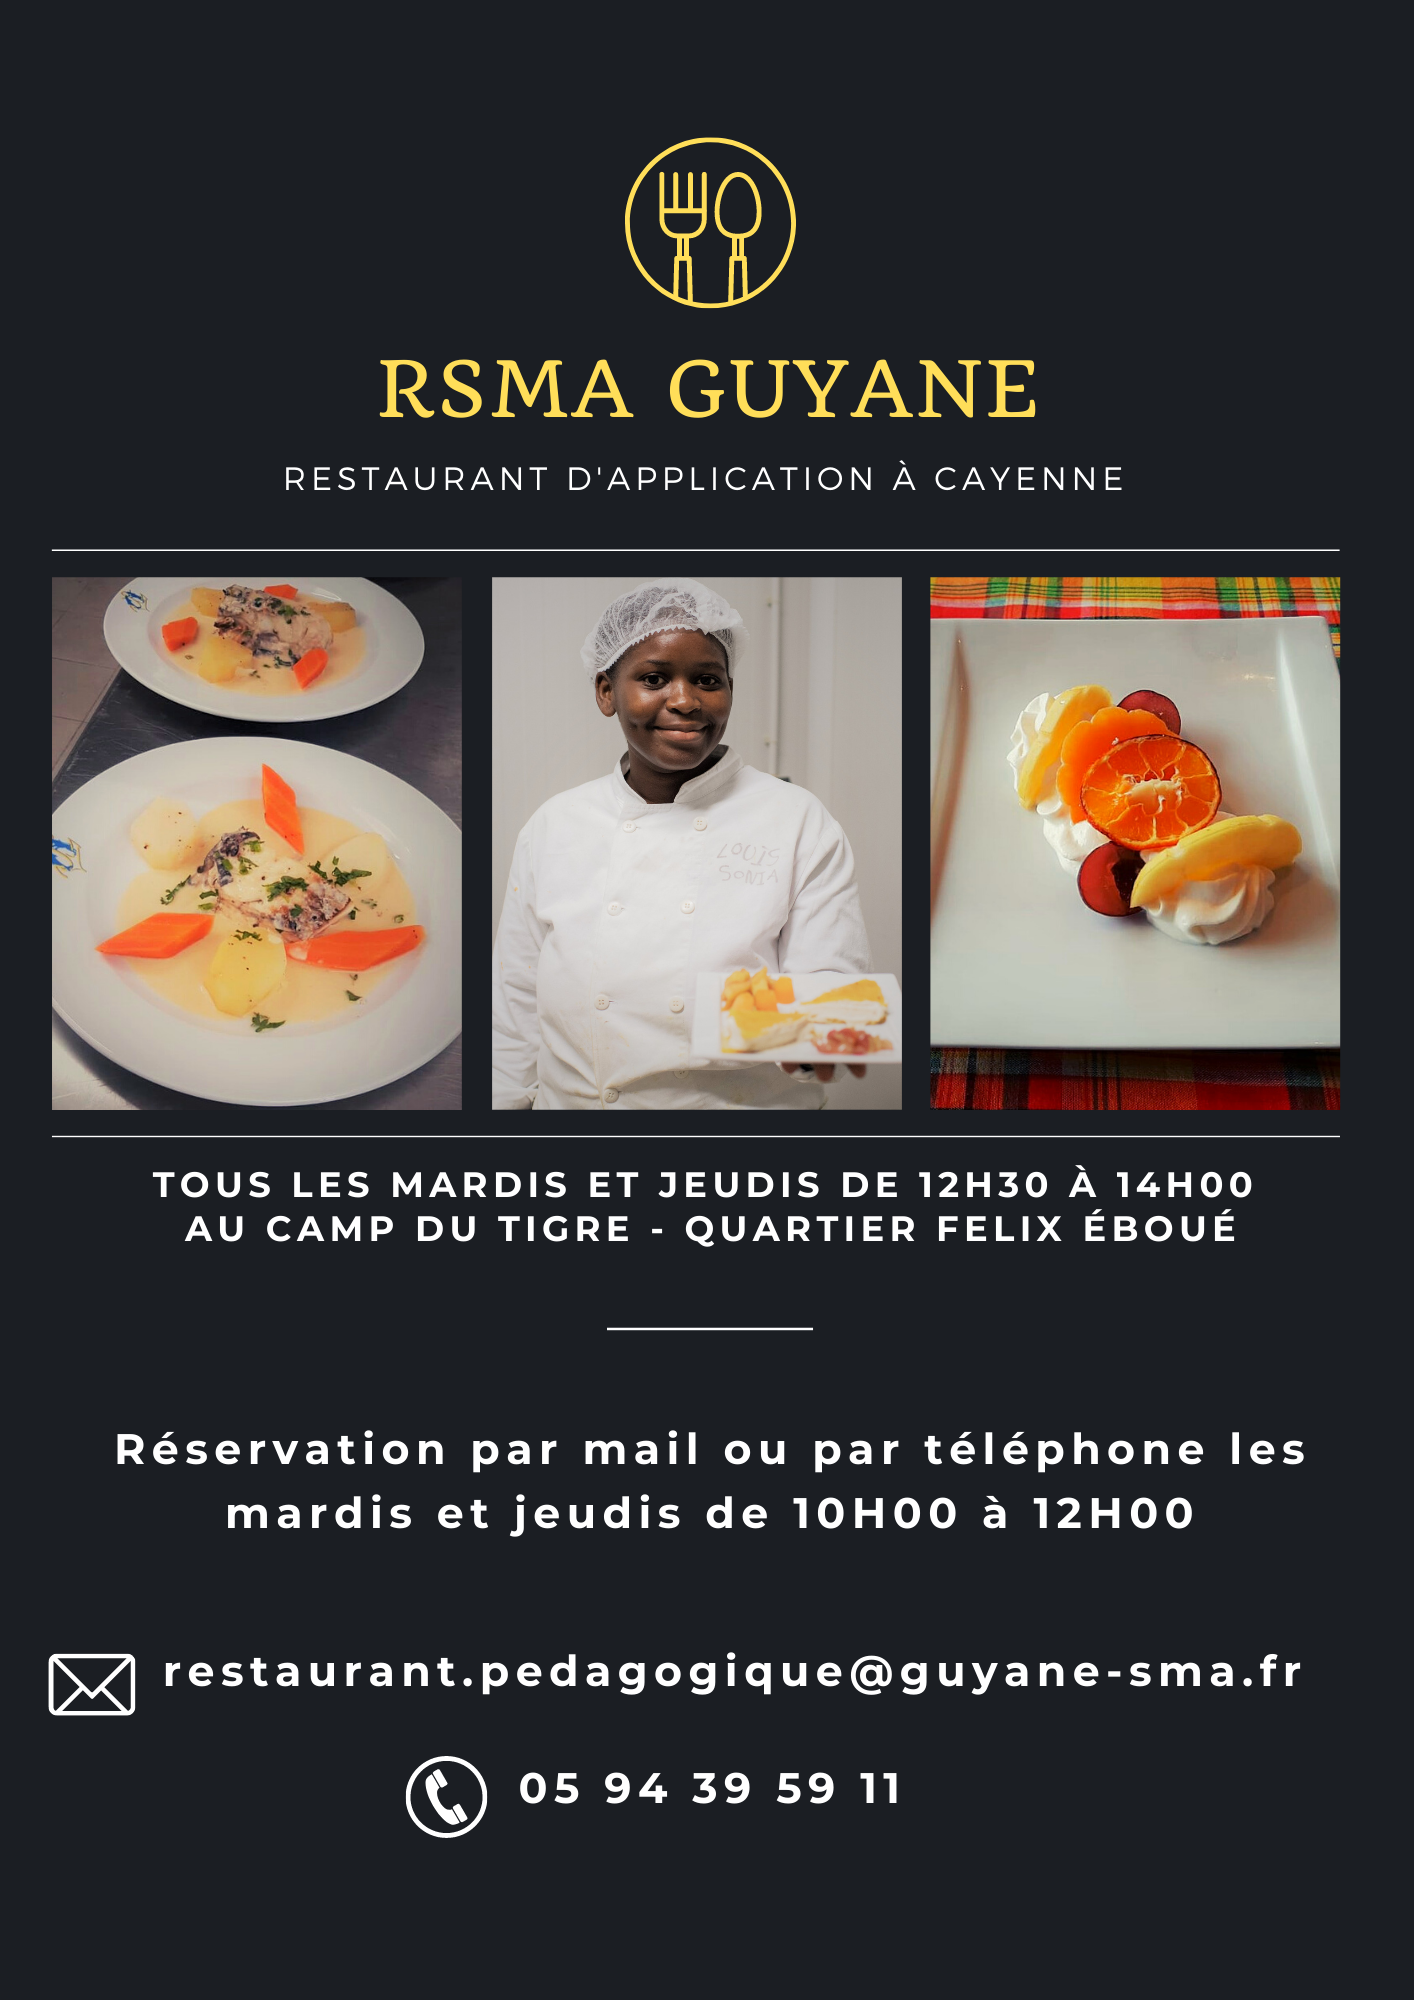 Restaurant d'application du RSMA Guyanne - Comment réserver ?